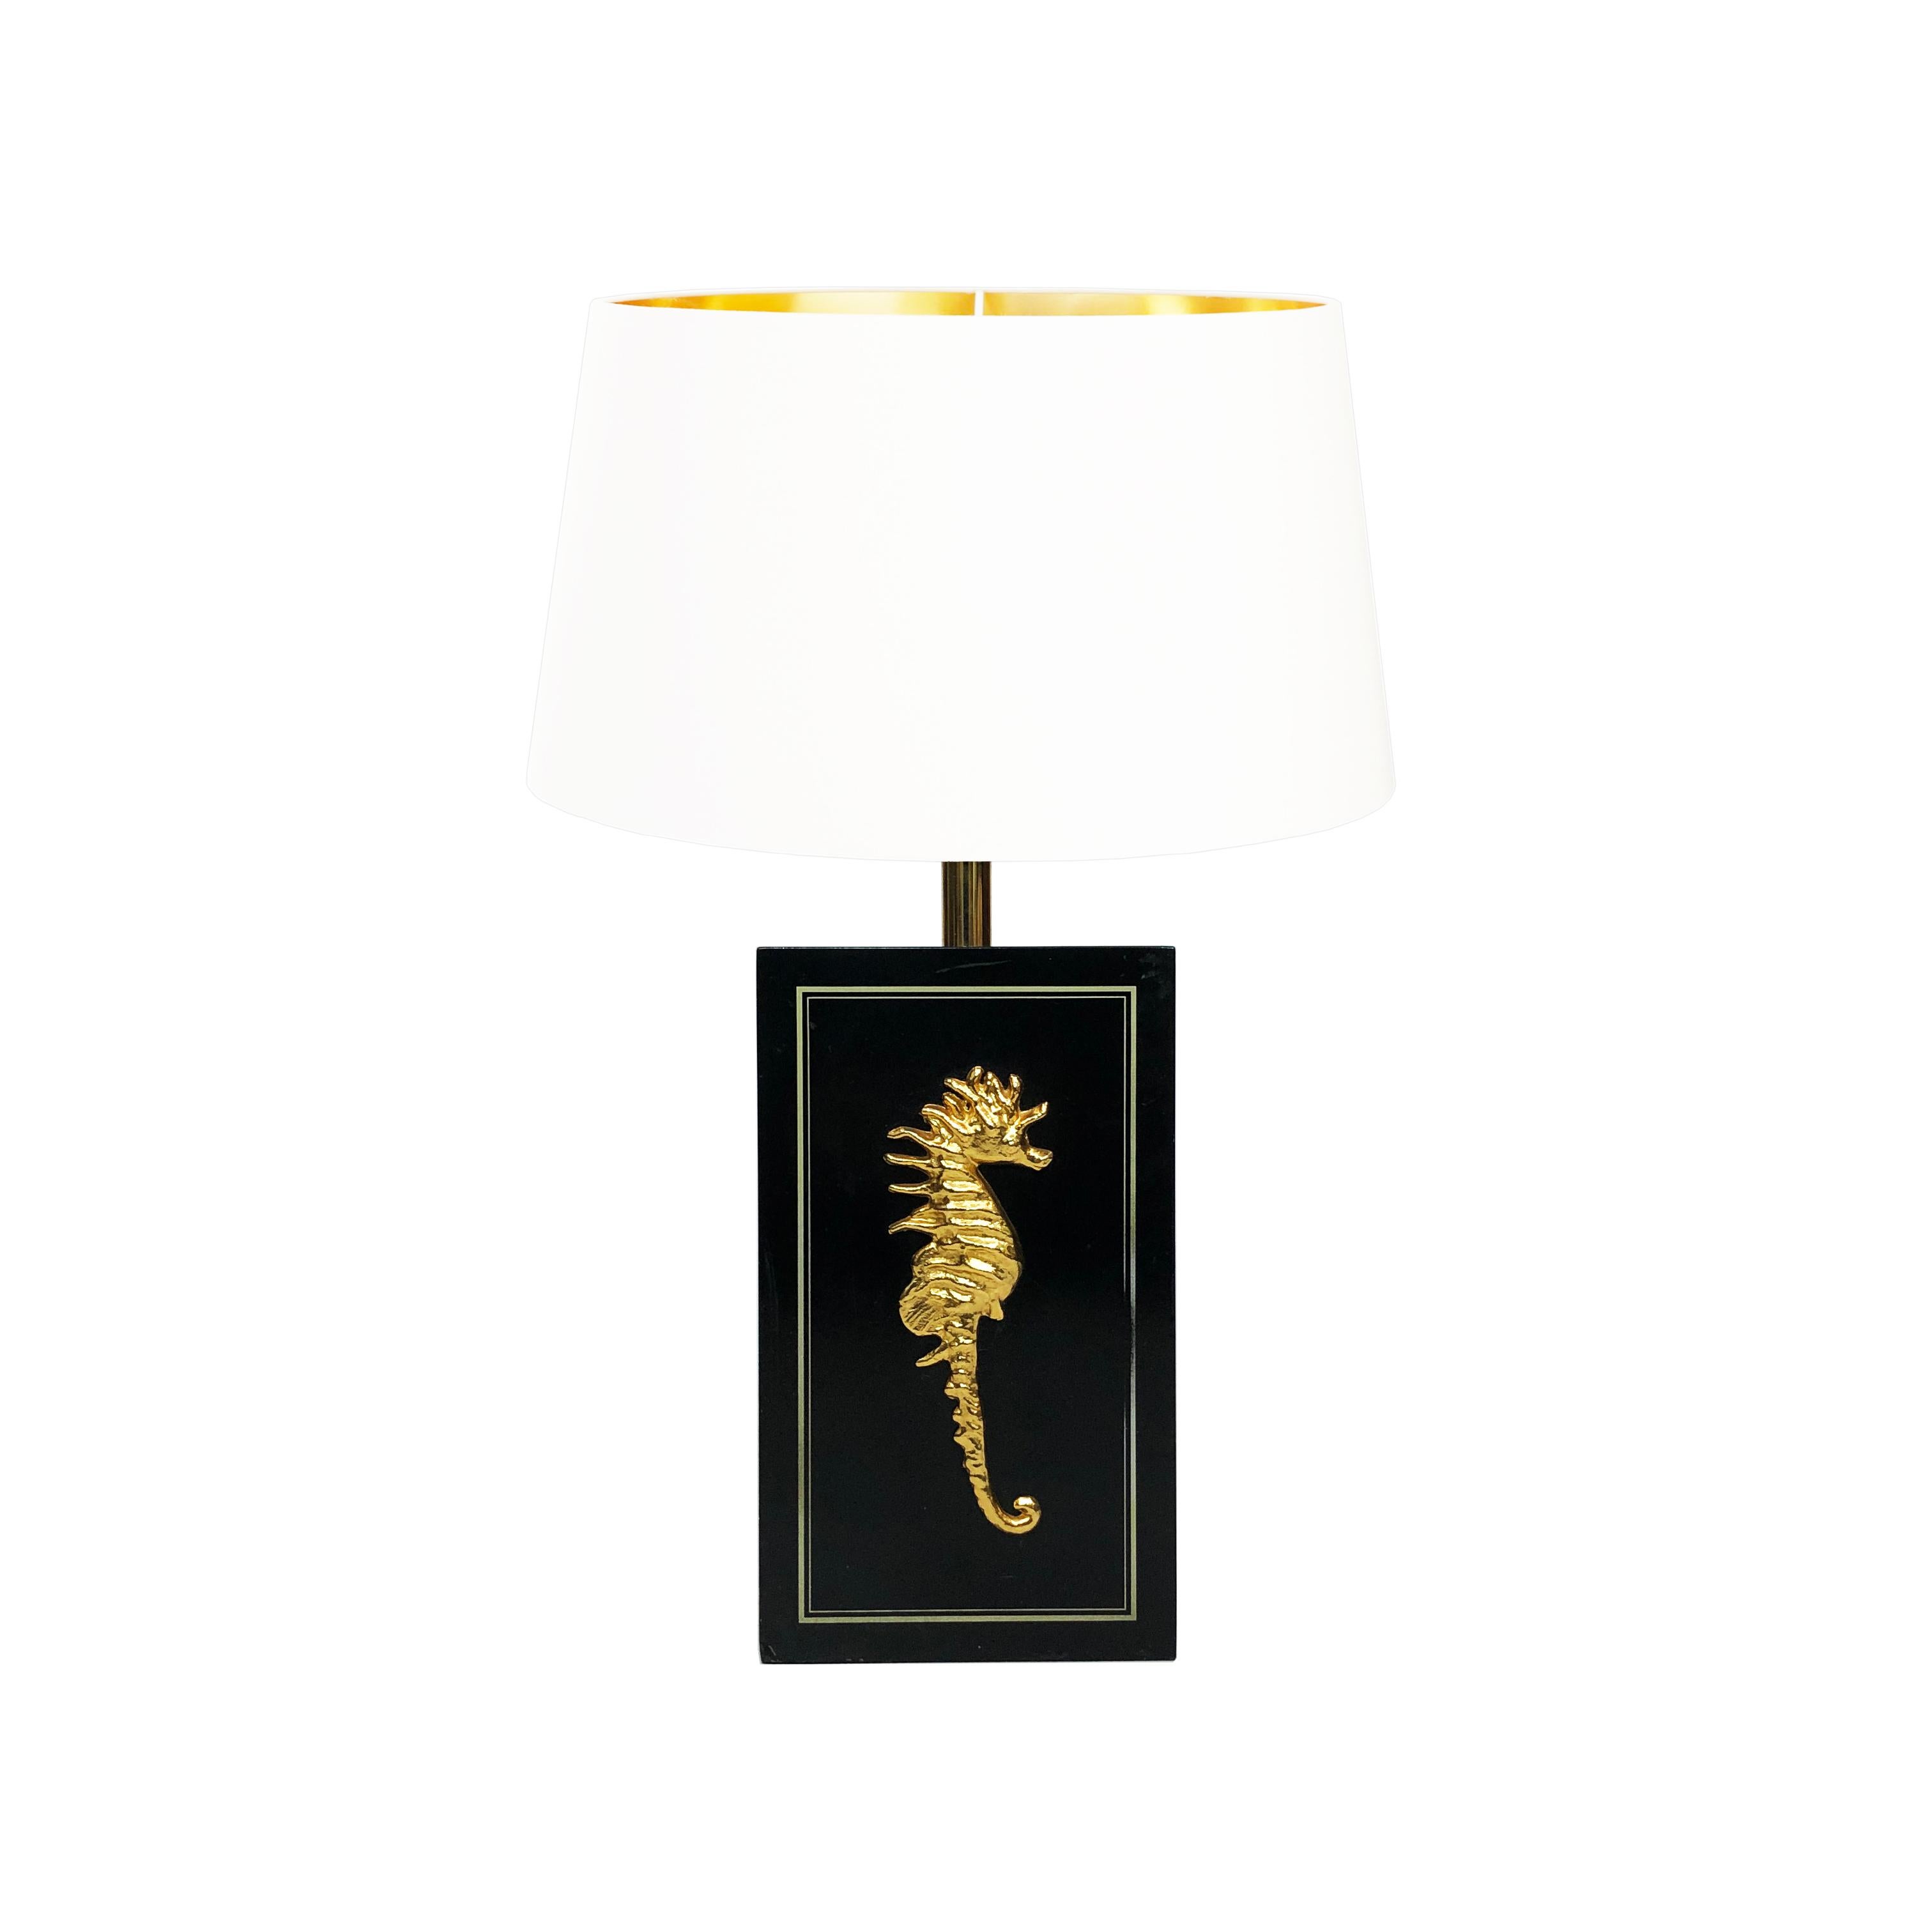 Cette lampe de table belge en noir et or représente le profil latéral d'un hippocampe, avec un hippocampe complexe plaqué laiton. Celui-ci est monté sur un socle rectangulaire en bois laqué, d'où dépasse la douille de l'ampoule. Les bords de la